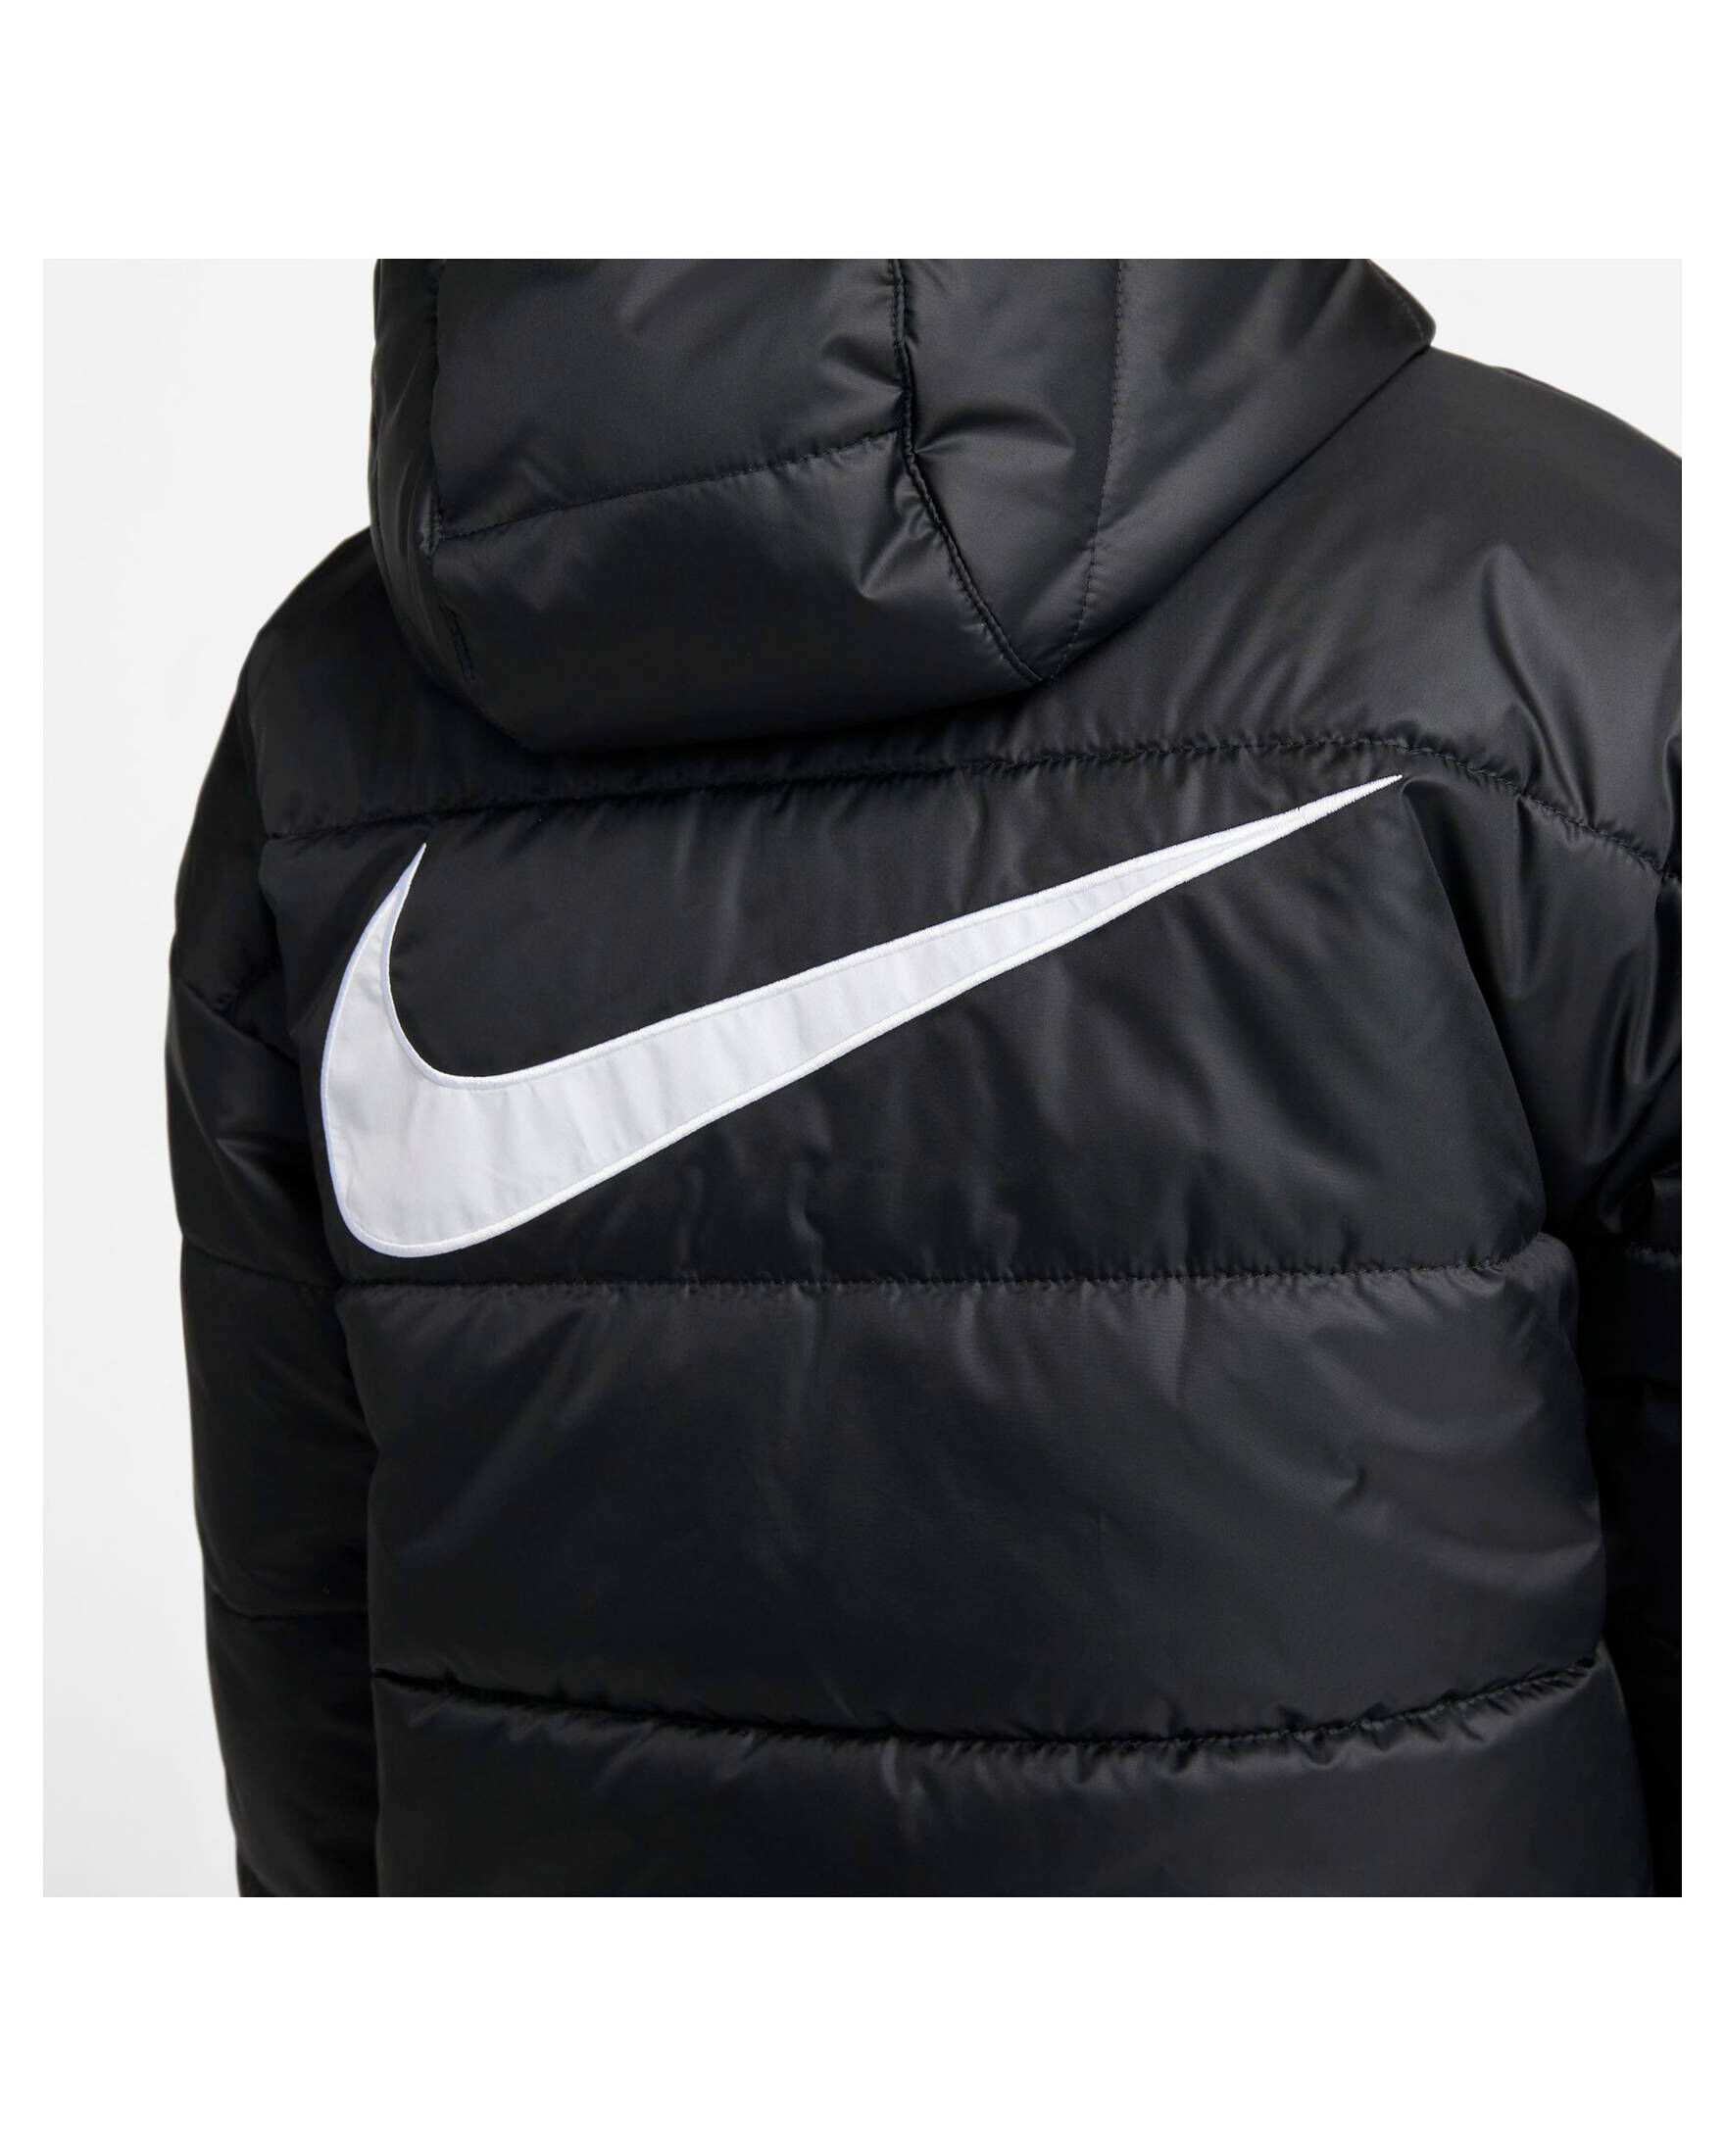 motief Maak leven Ontbering Nike Sportswear Damen Winterjacke kaufen | engelhorn